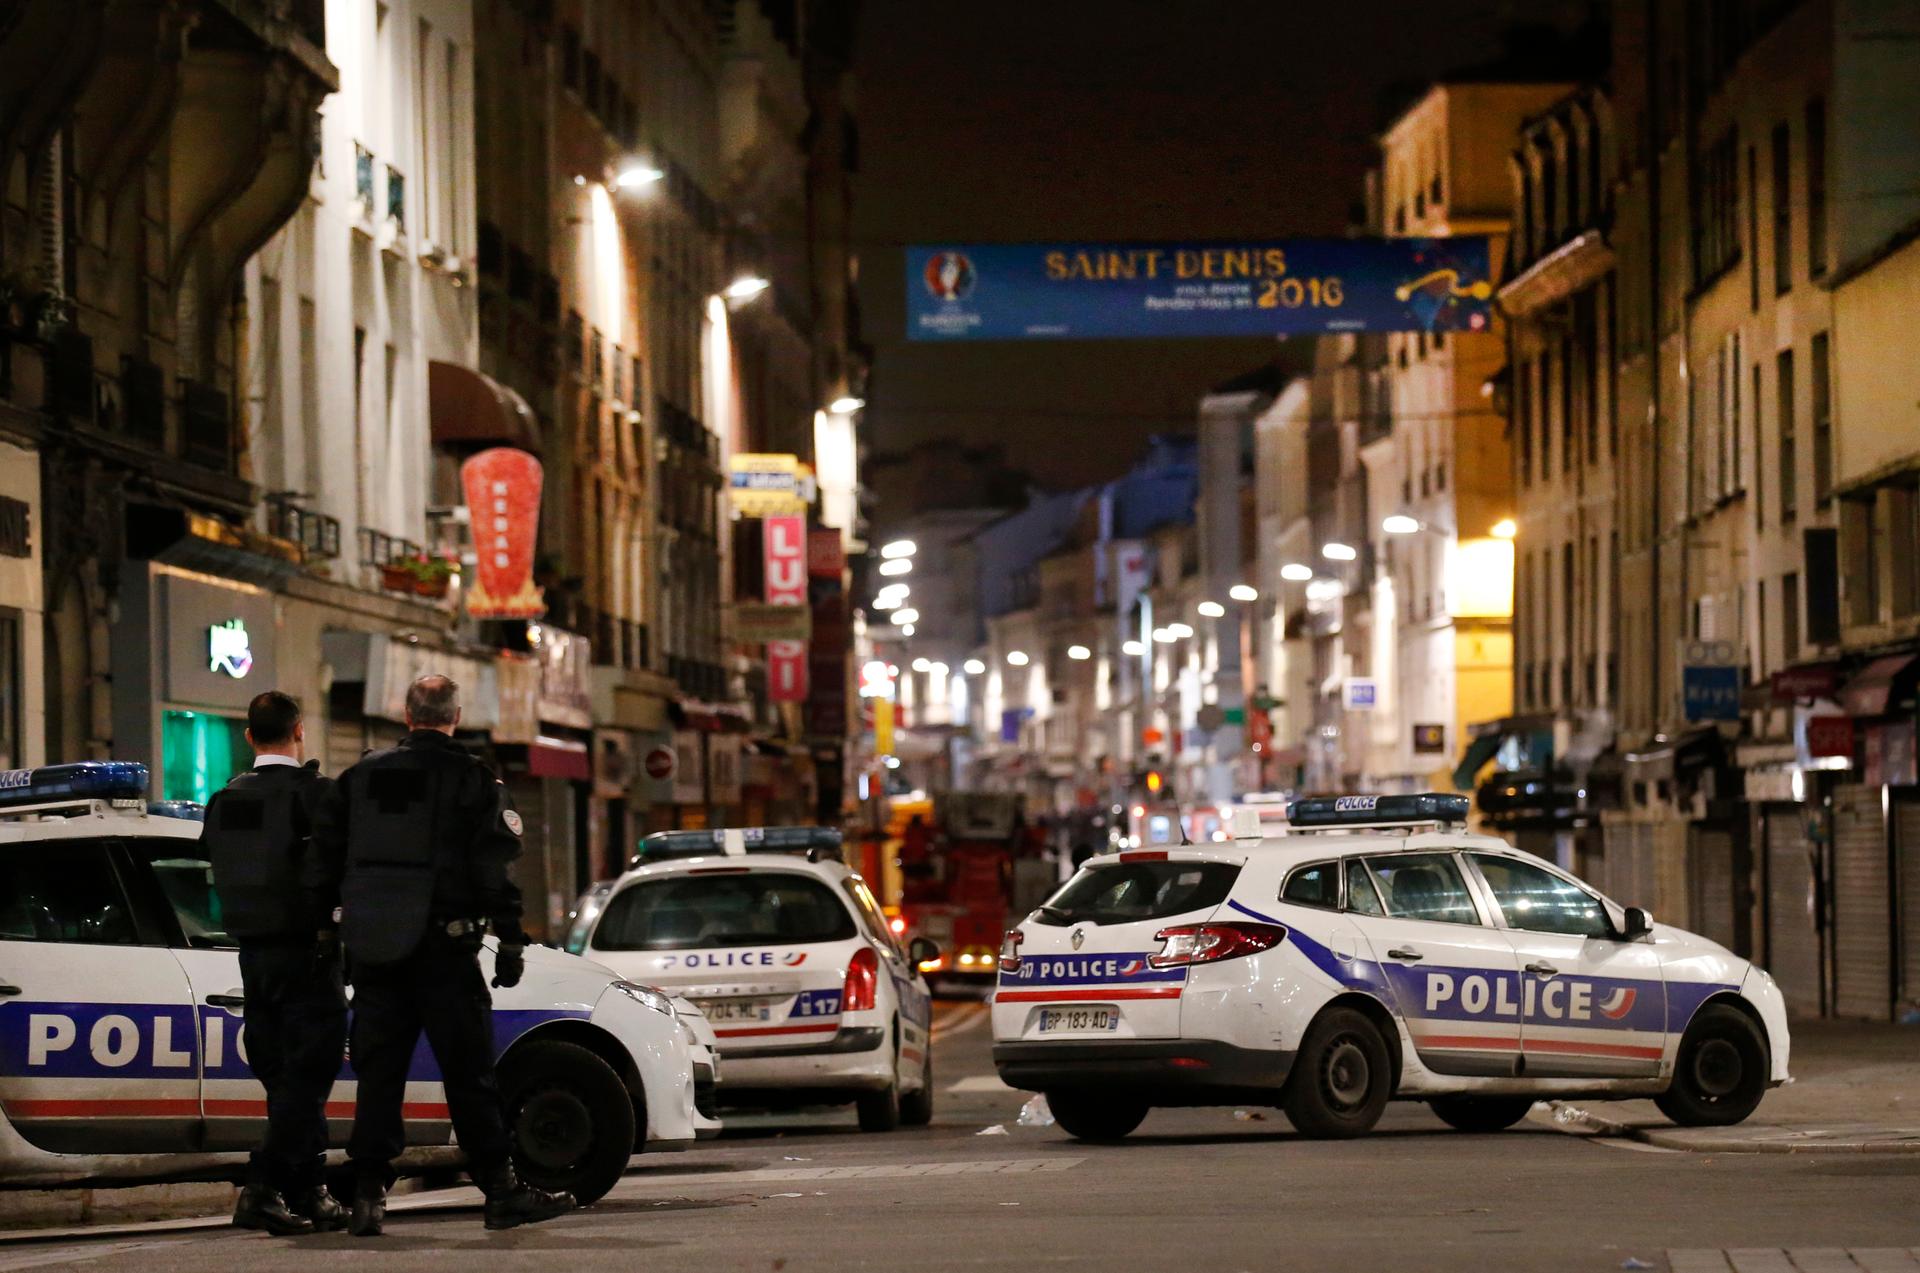 полицейские машины во франции